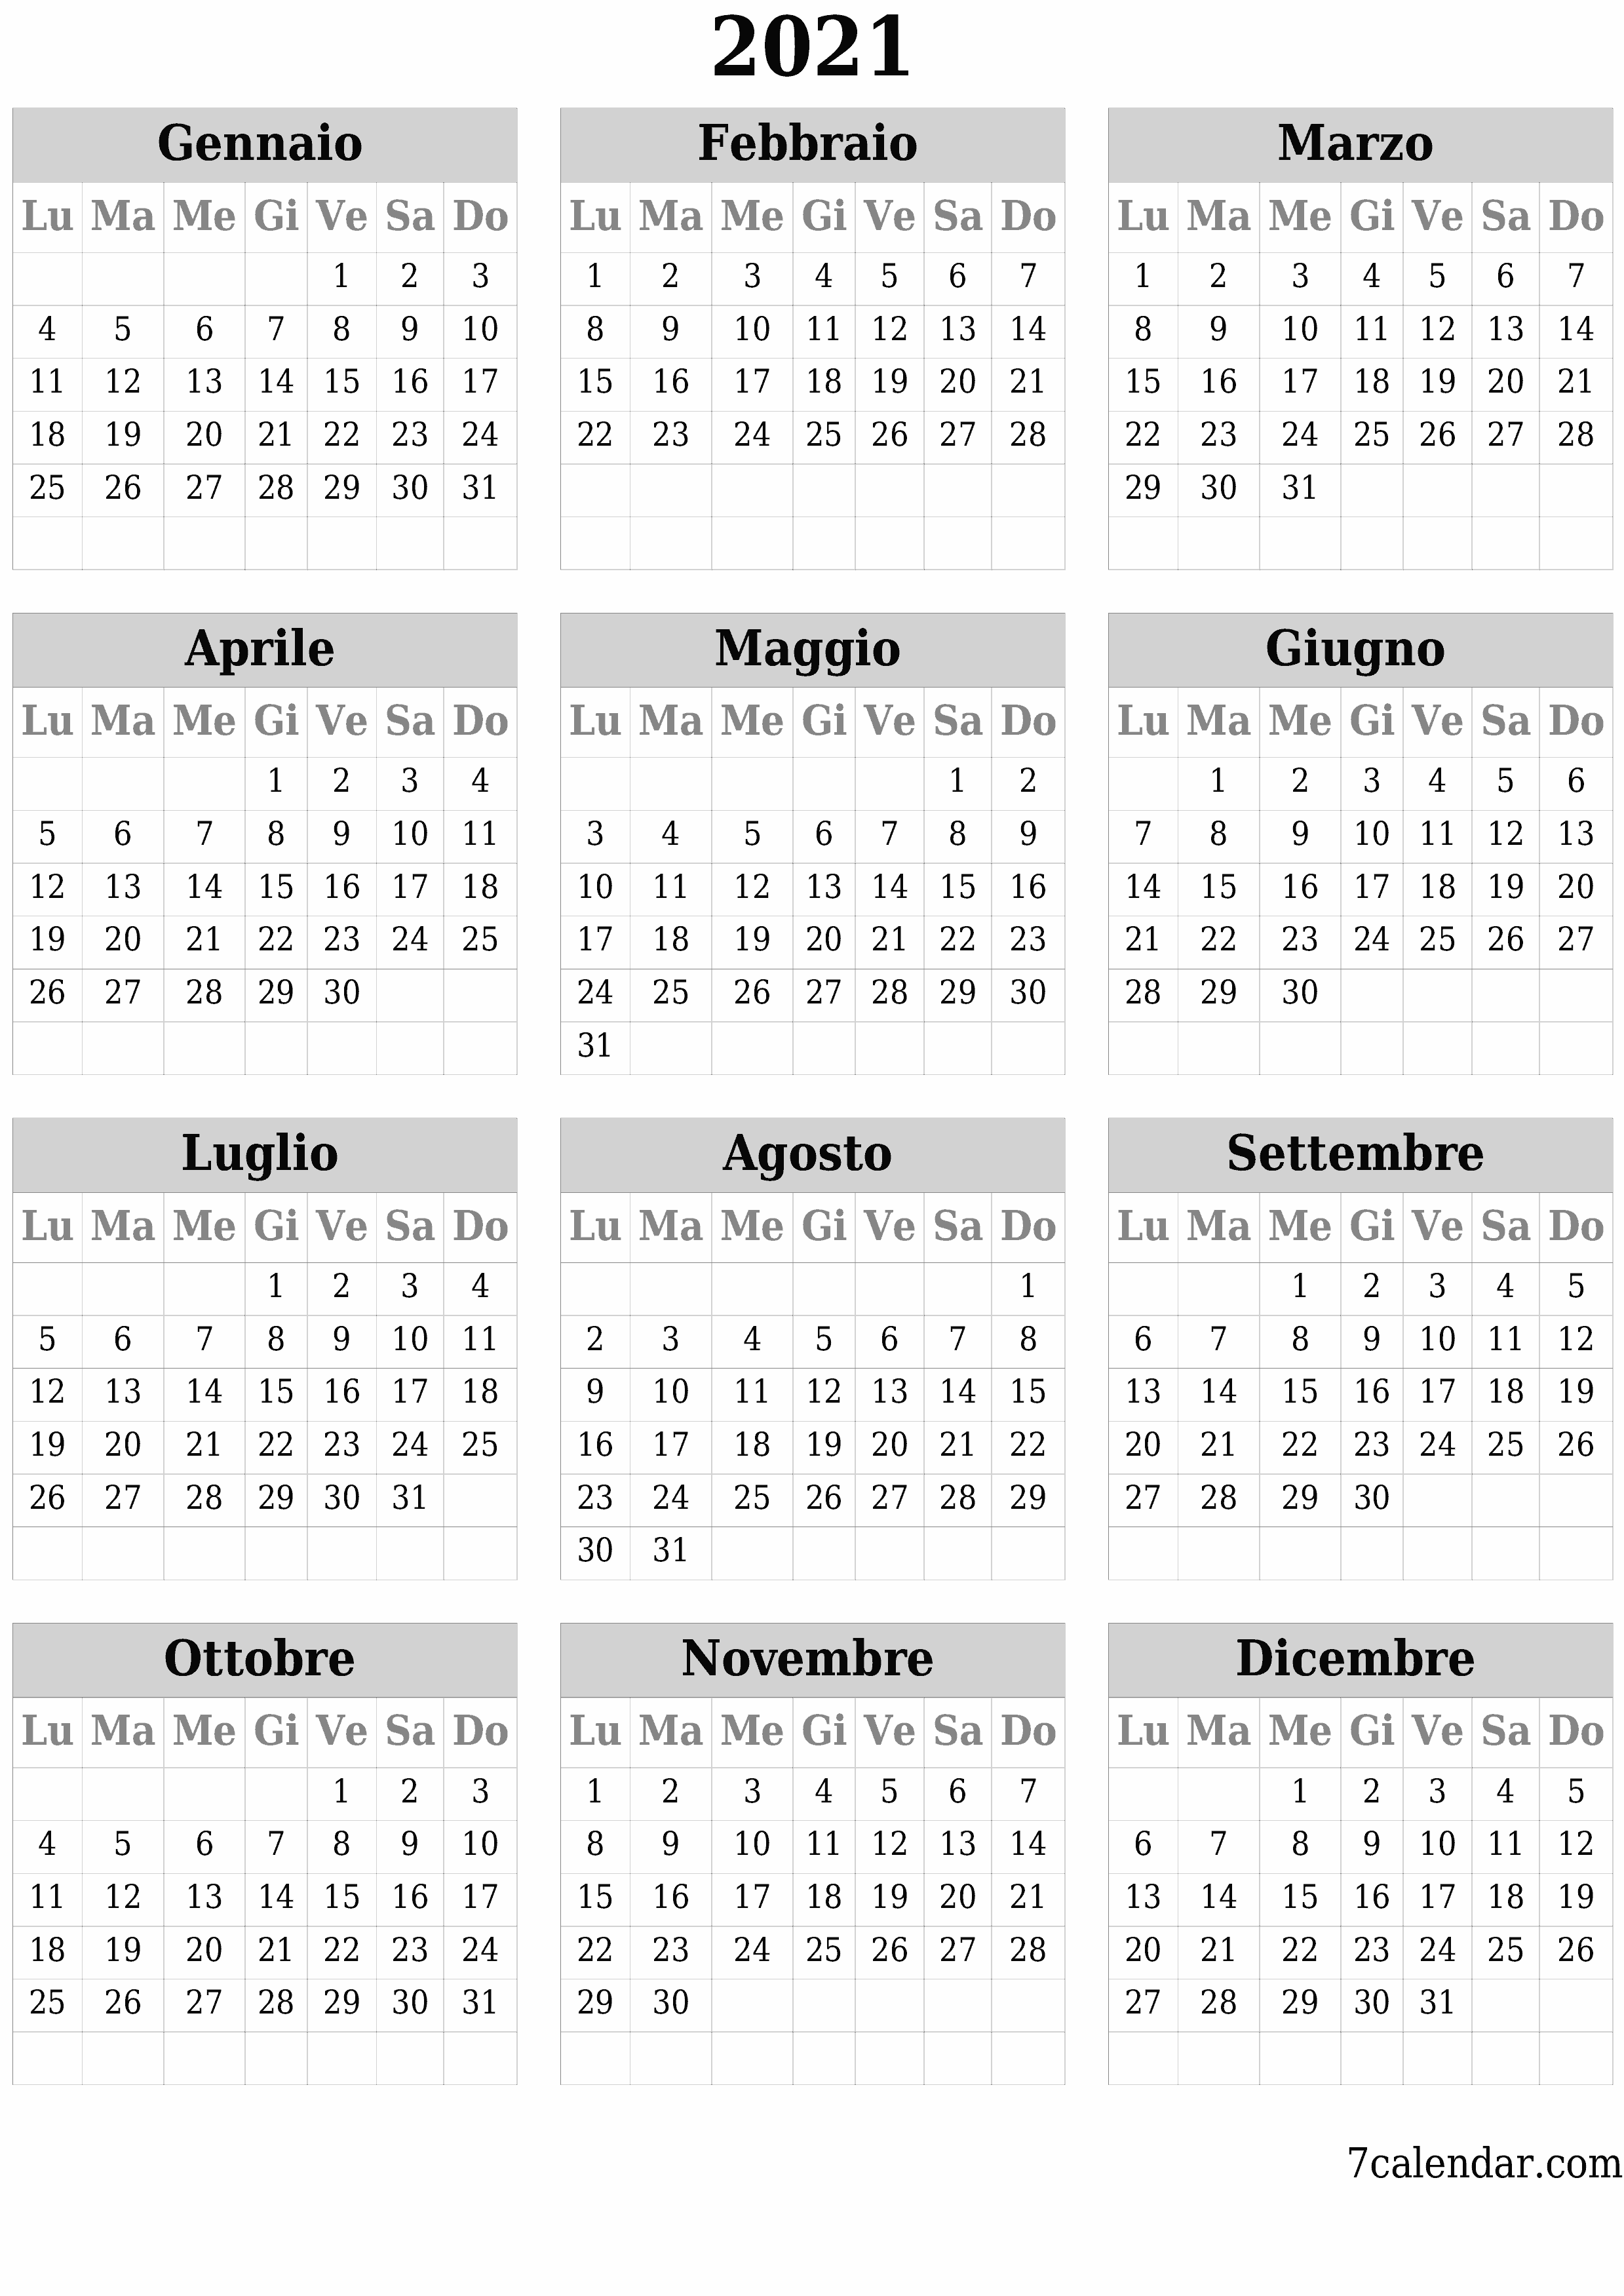 Calendario annuale vuoto per l'anno 2021 salva e stampa in PDF PNG Italian - 7calendar.com